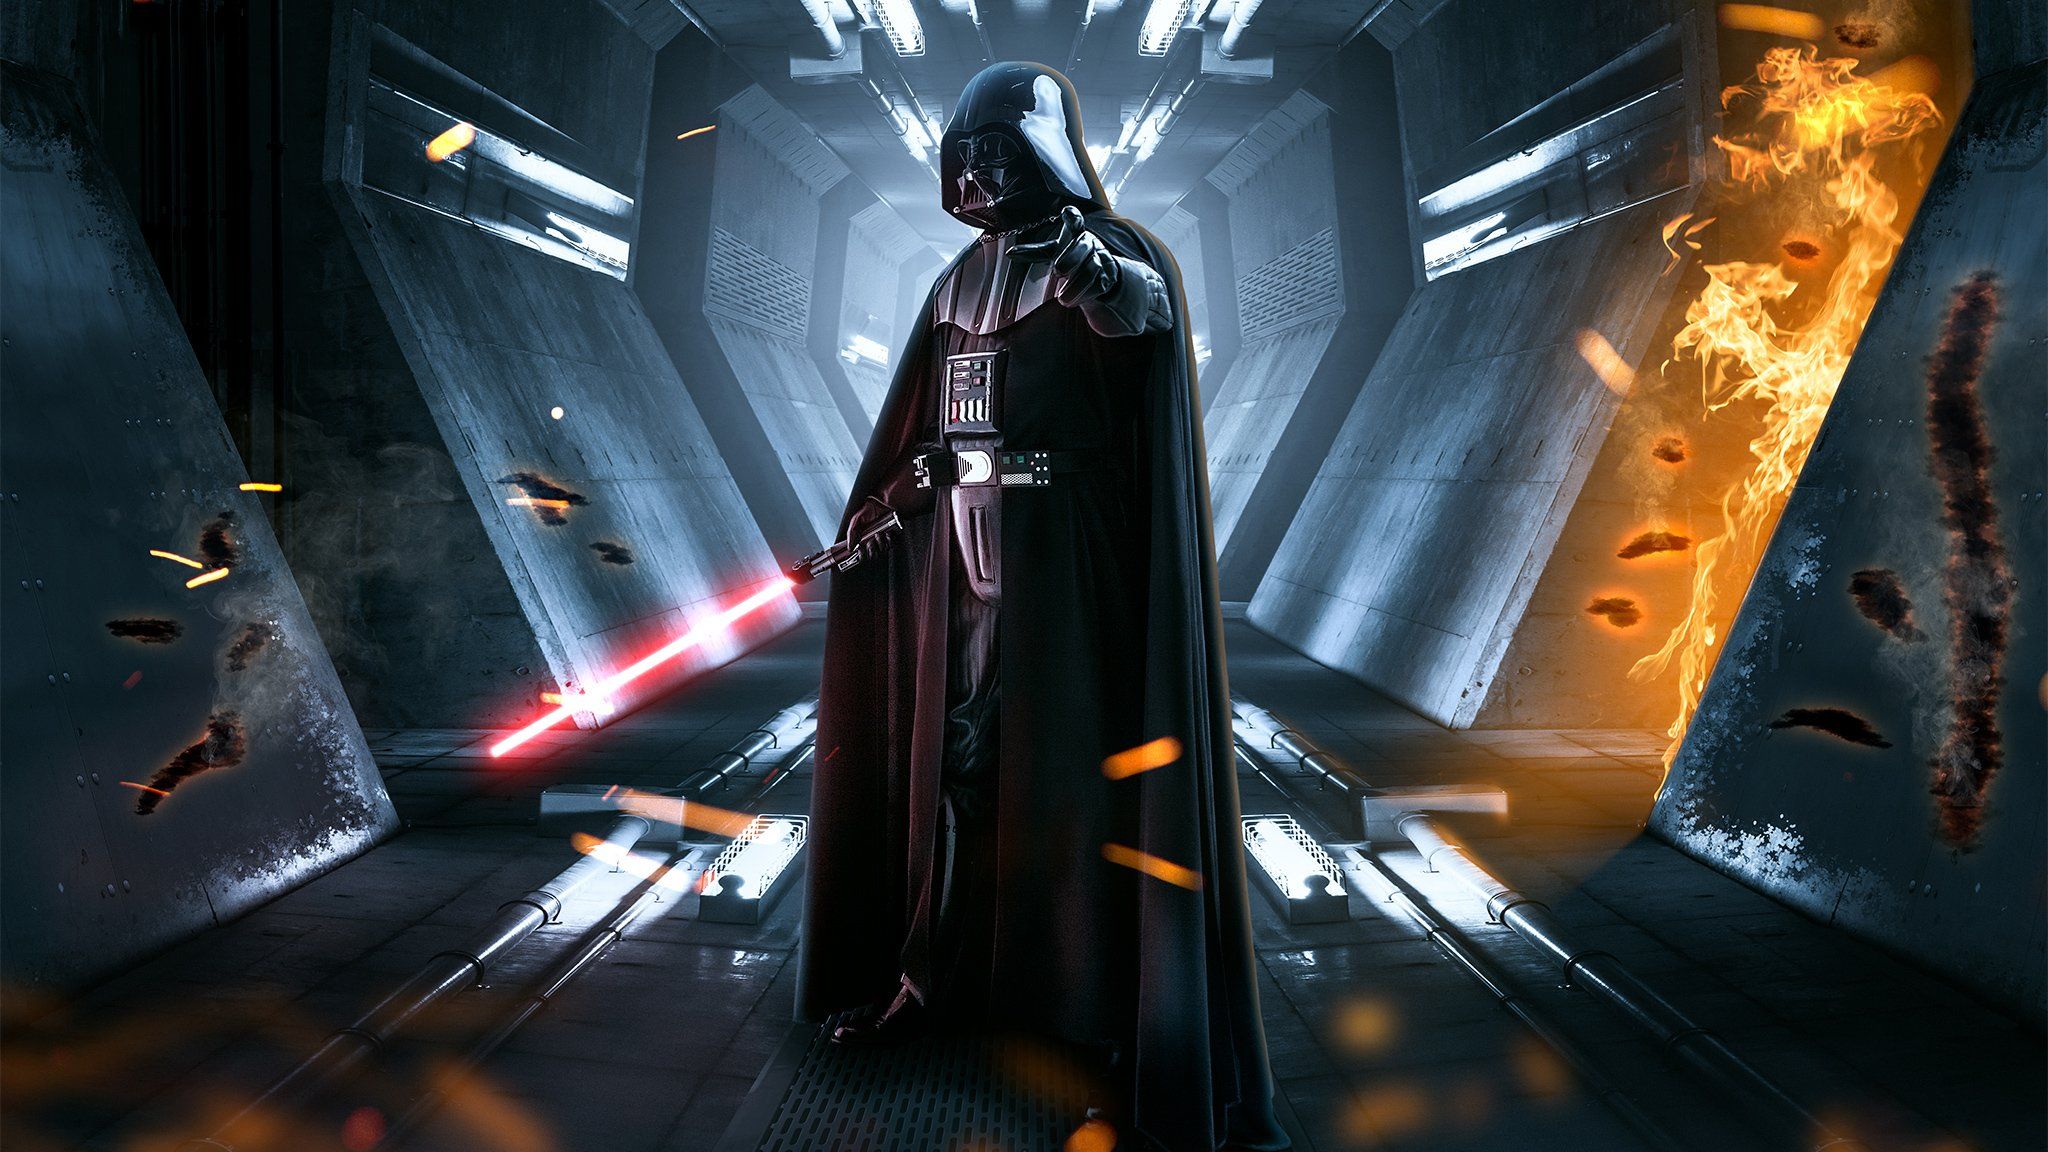 Star Wars Wallpaper High Resolution Darth Vader